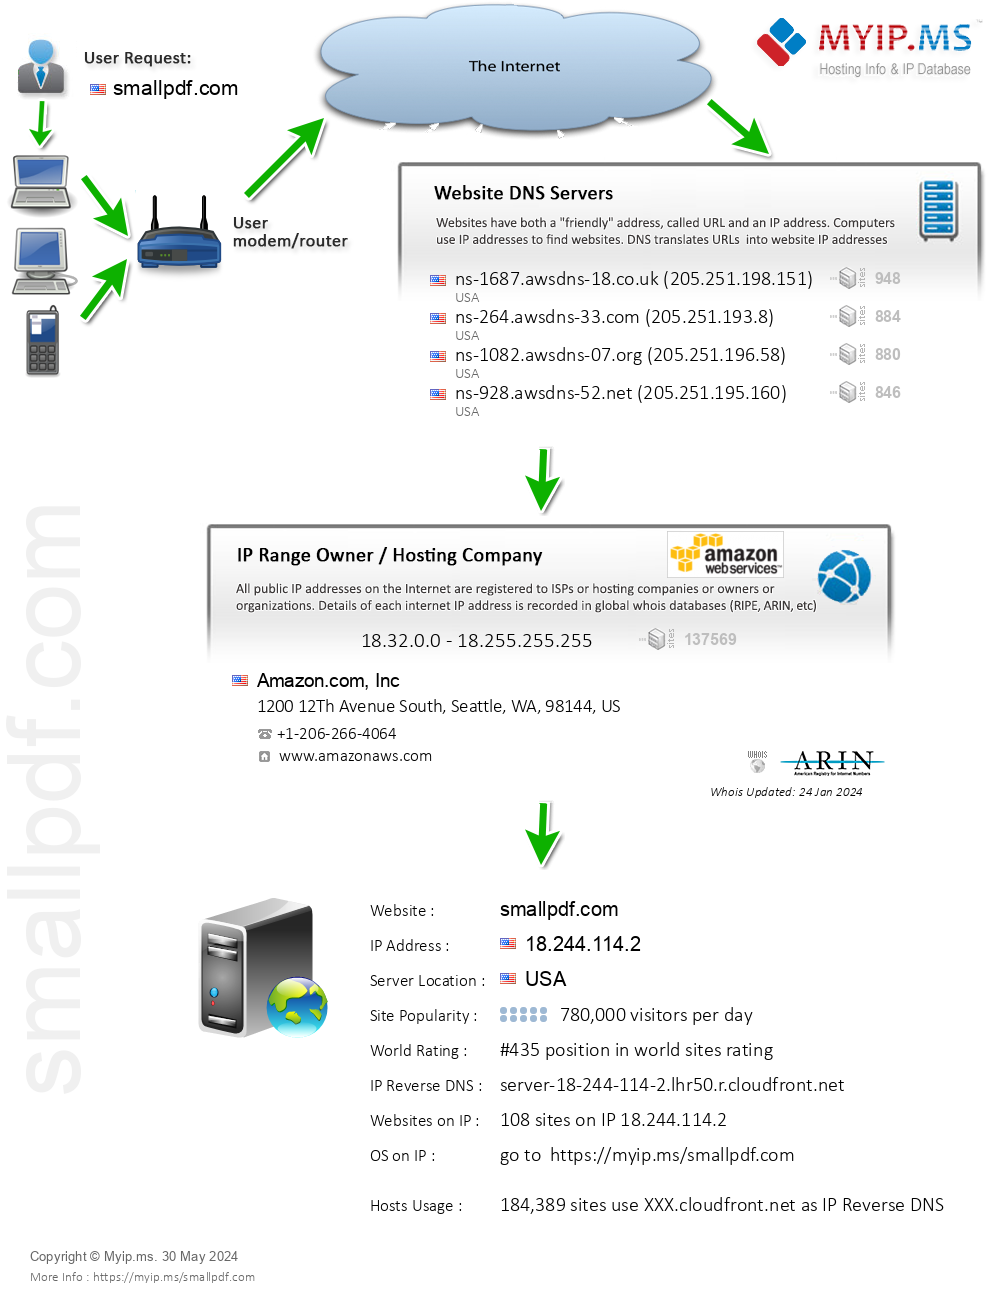 Smallpdf.com - Website Hosting Visual IP Diagram